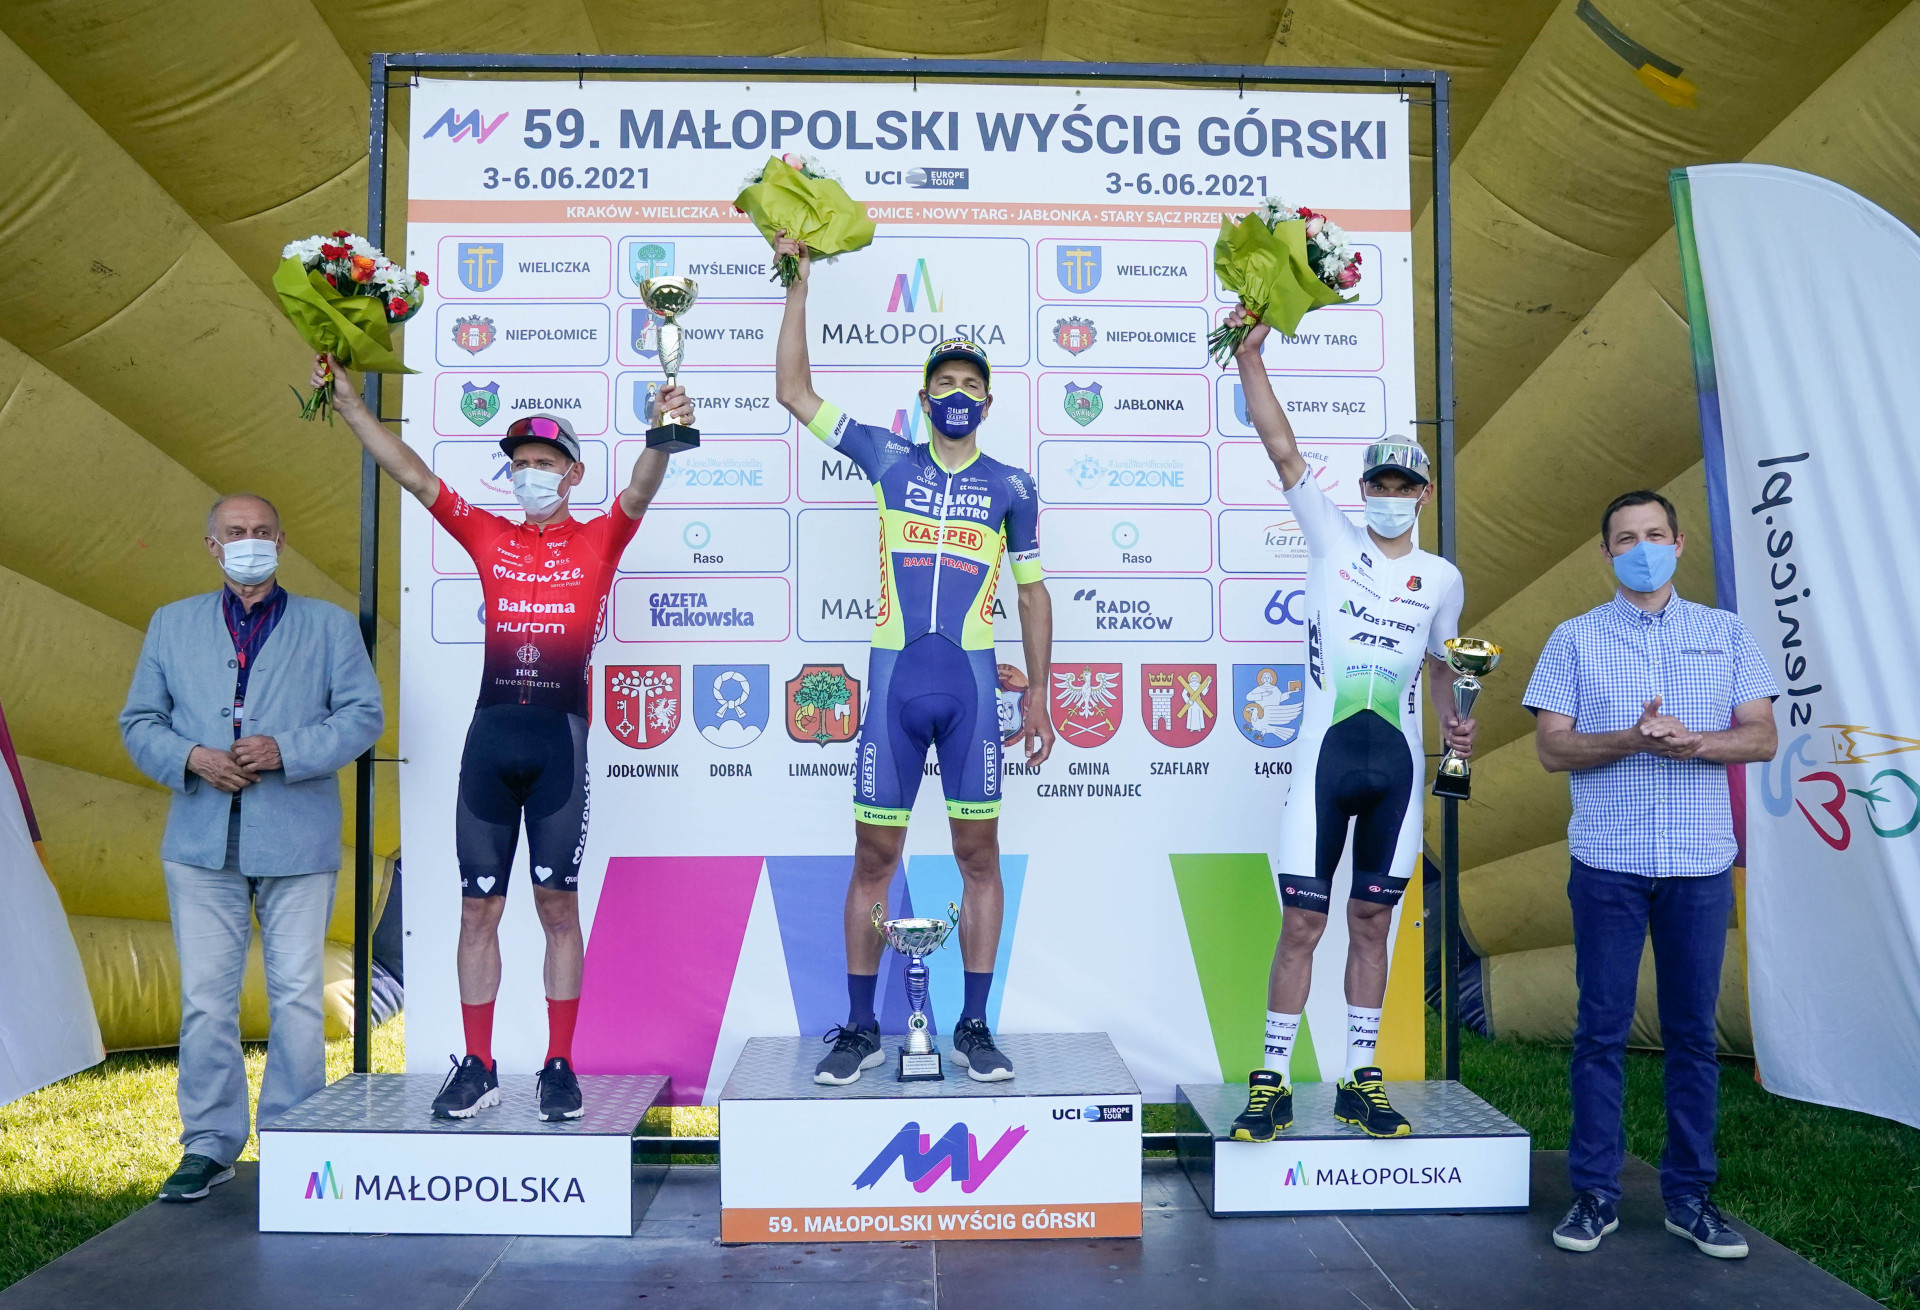 Zwycięstwem Czecha Michala Schlegela (Elkov-Kasper) zakończył się 1. etap Małopolskiego Wyścigu Górskiego z metą na Górze Chełm